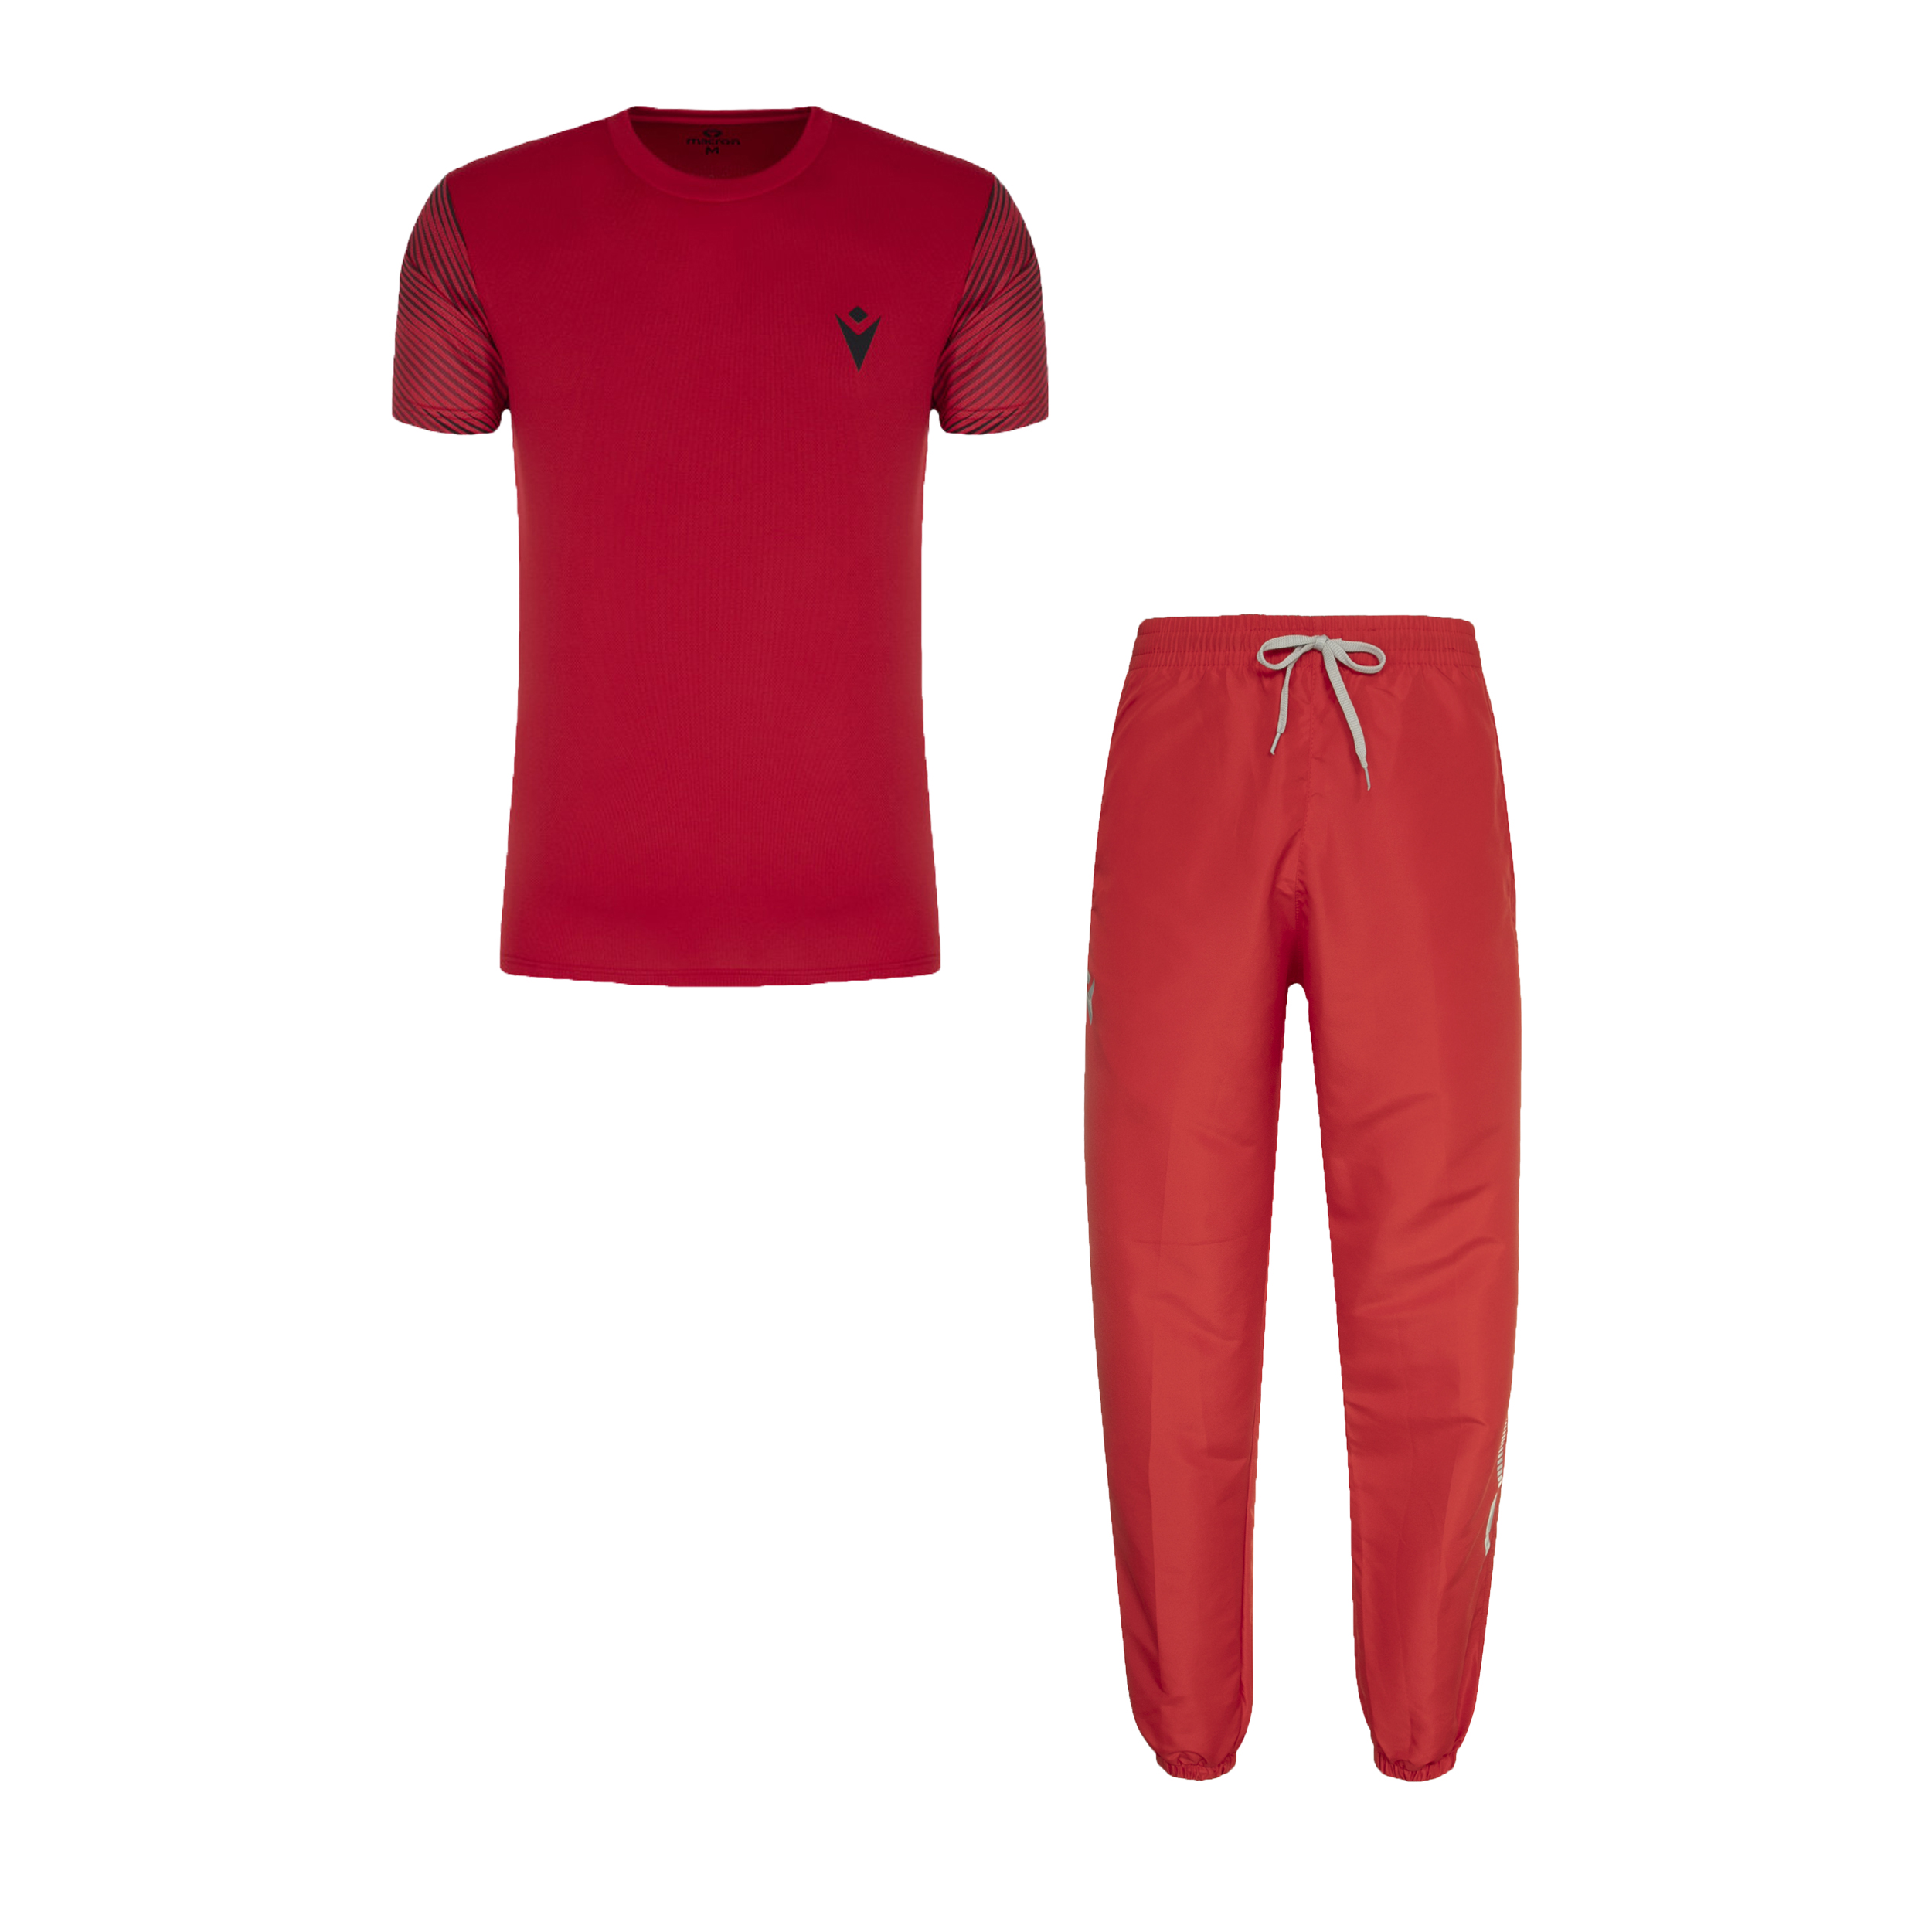 ست تی شرت آستین کوتاه و شلوار ورزشی مردانه مکرون مدل سین رم رنگ قرمز